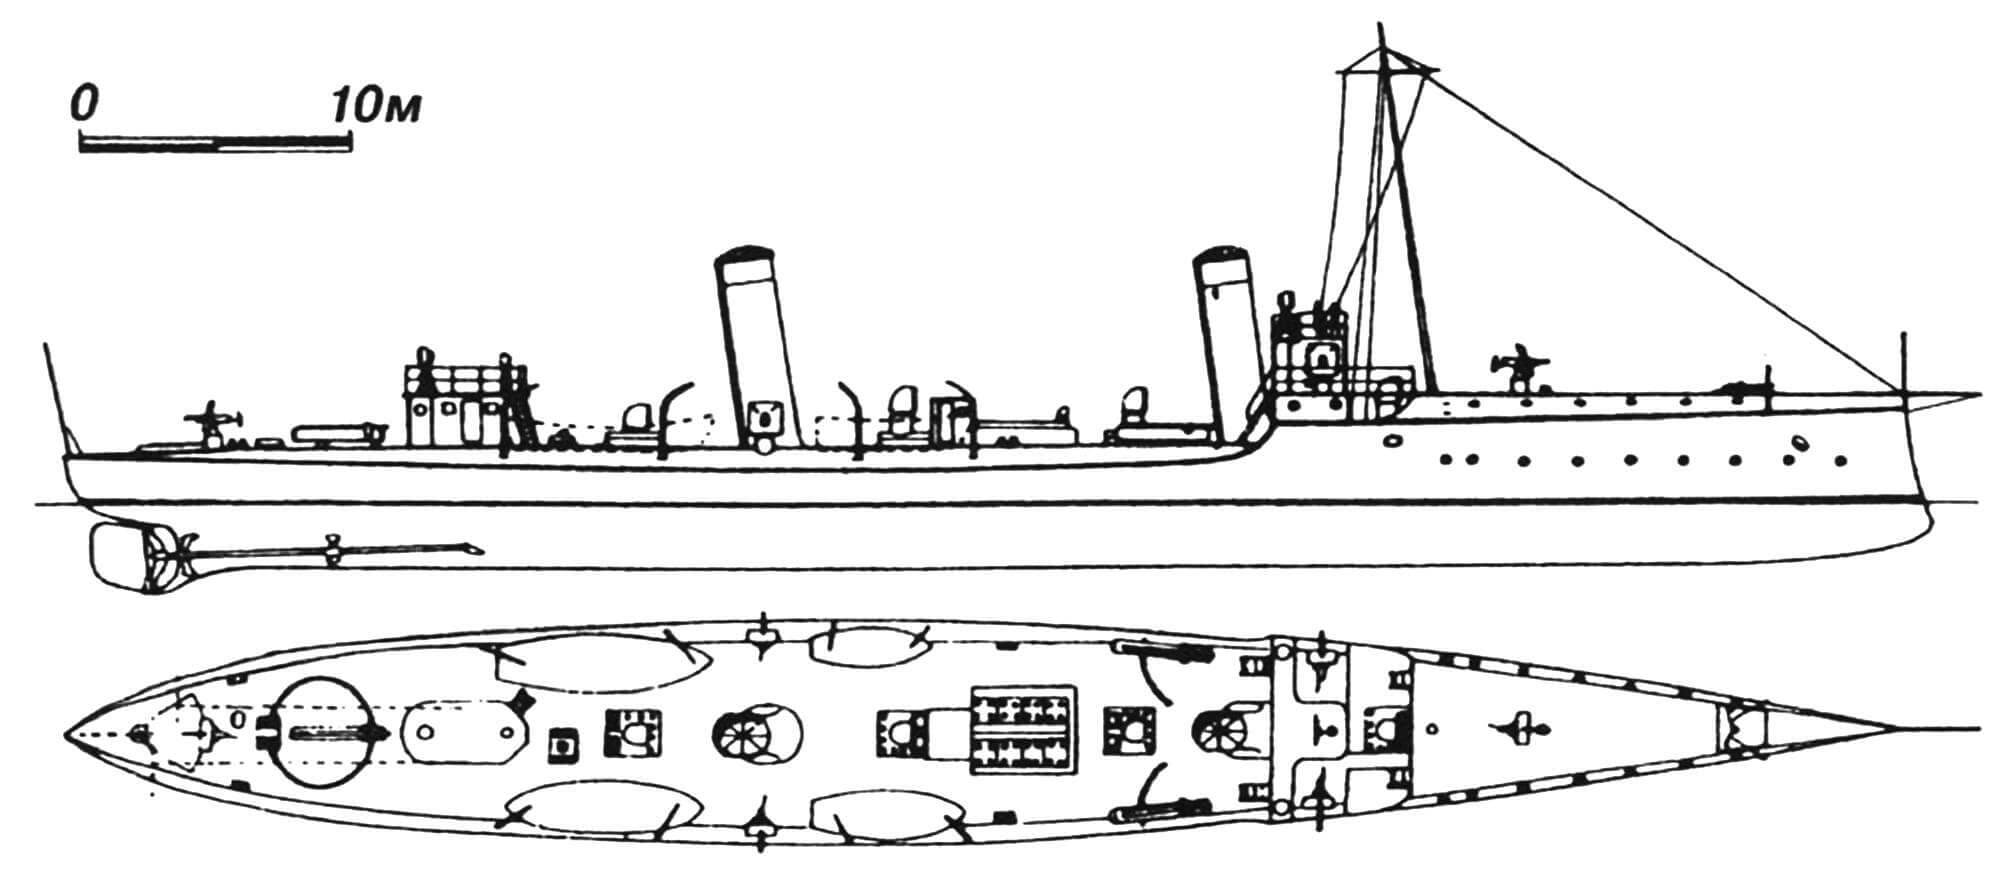 79. Минный крейсер «Магнет», Австро-Венгрия, 1896 г. Строился в Германии фирмой «Шихау». Водоизмещение полное 550 т. Длина по ватерлинии 67,5 м, ширина 8,2 м, осадка 2,3 м. Мощность двухвальной паросиловой установки 5600 л.с., скорость на испытаниях 24,1 узла. Вооружение: два 450-мм торпедных аппарата, шесть 47-мм пушек. Построена одна единица. В 1916 г. получил повреждения от торпеды. Восстановлен, модернизирован с установкой трех торпедных аппаратов, двух 66-мм и четырех 47-мм орудий. После Первой мировой войны передан Италии, где в 1921 г. сдан на слом.